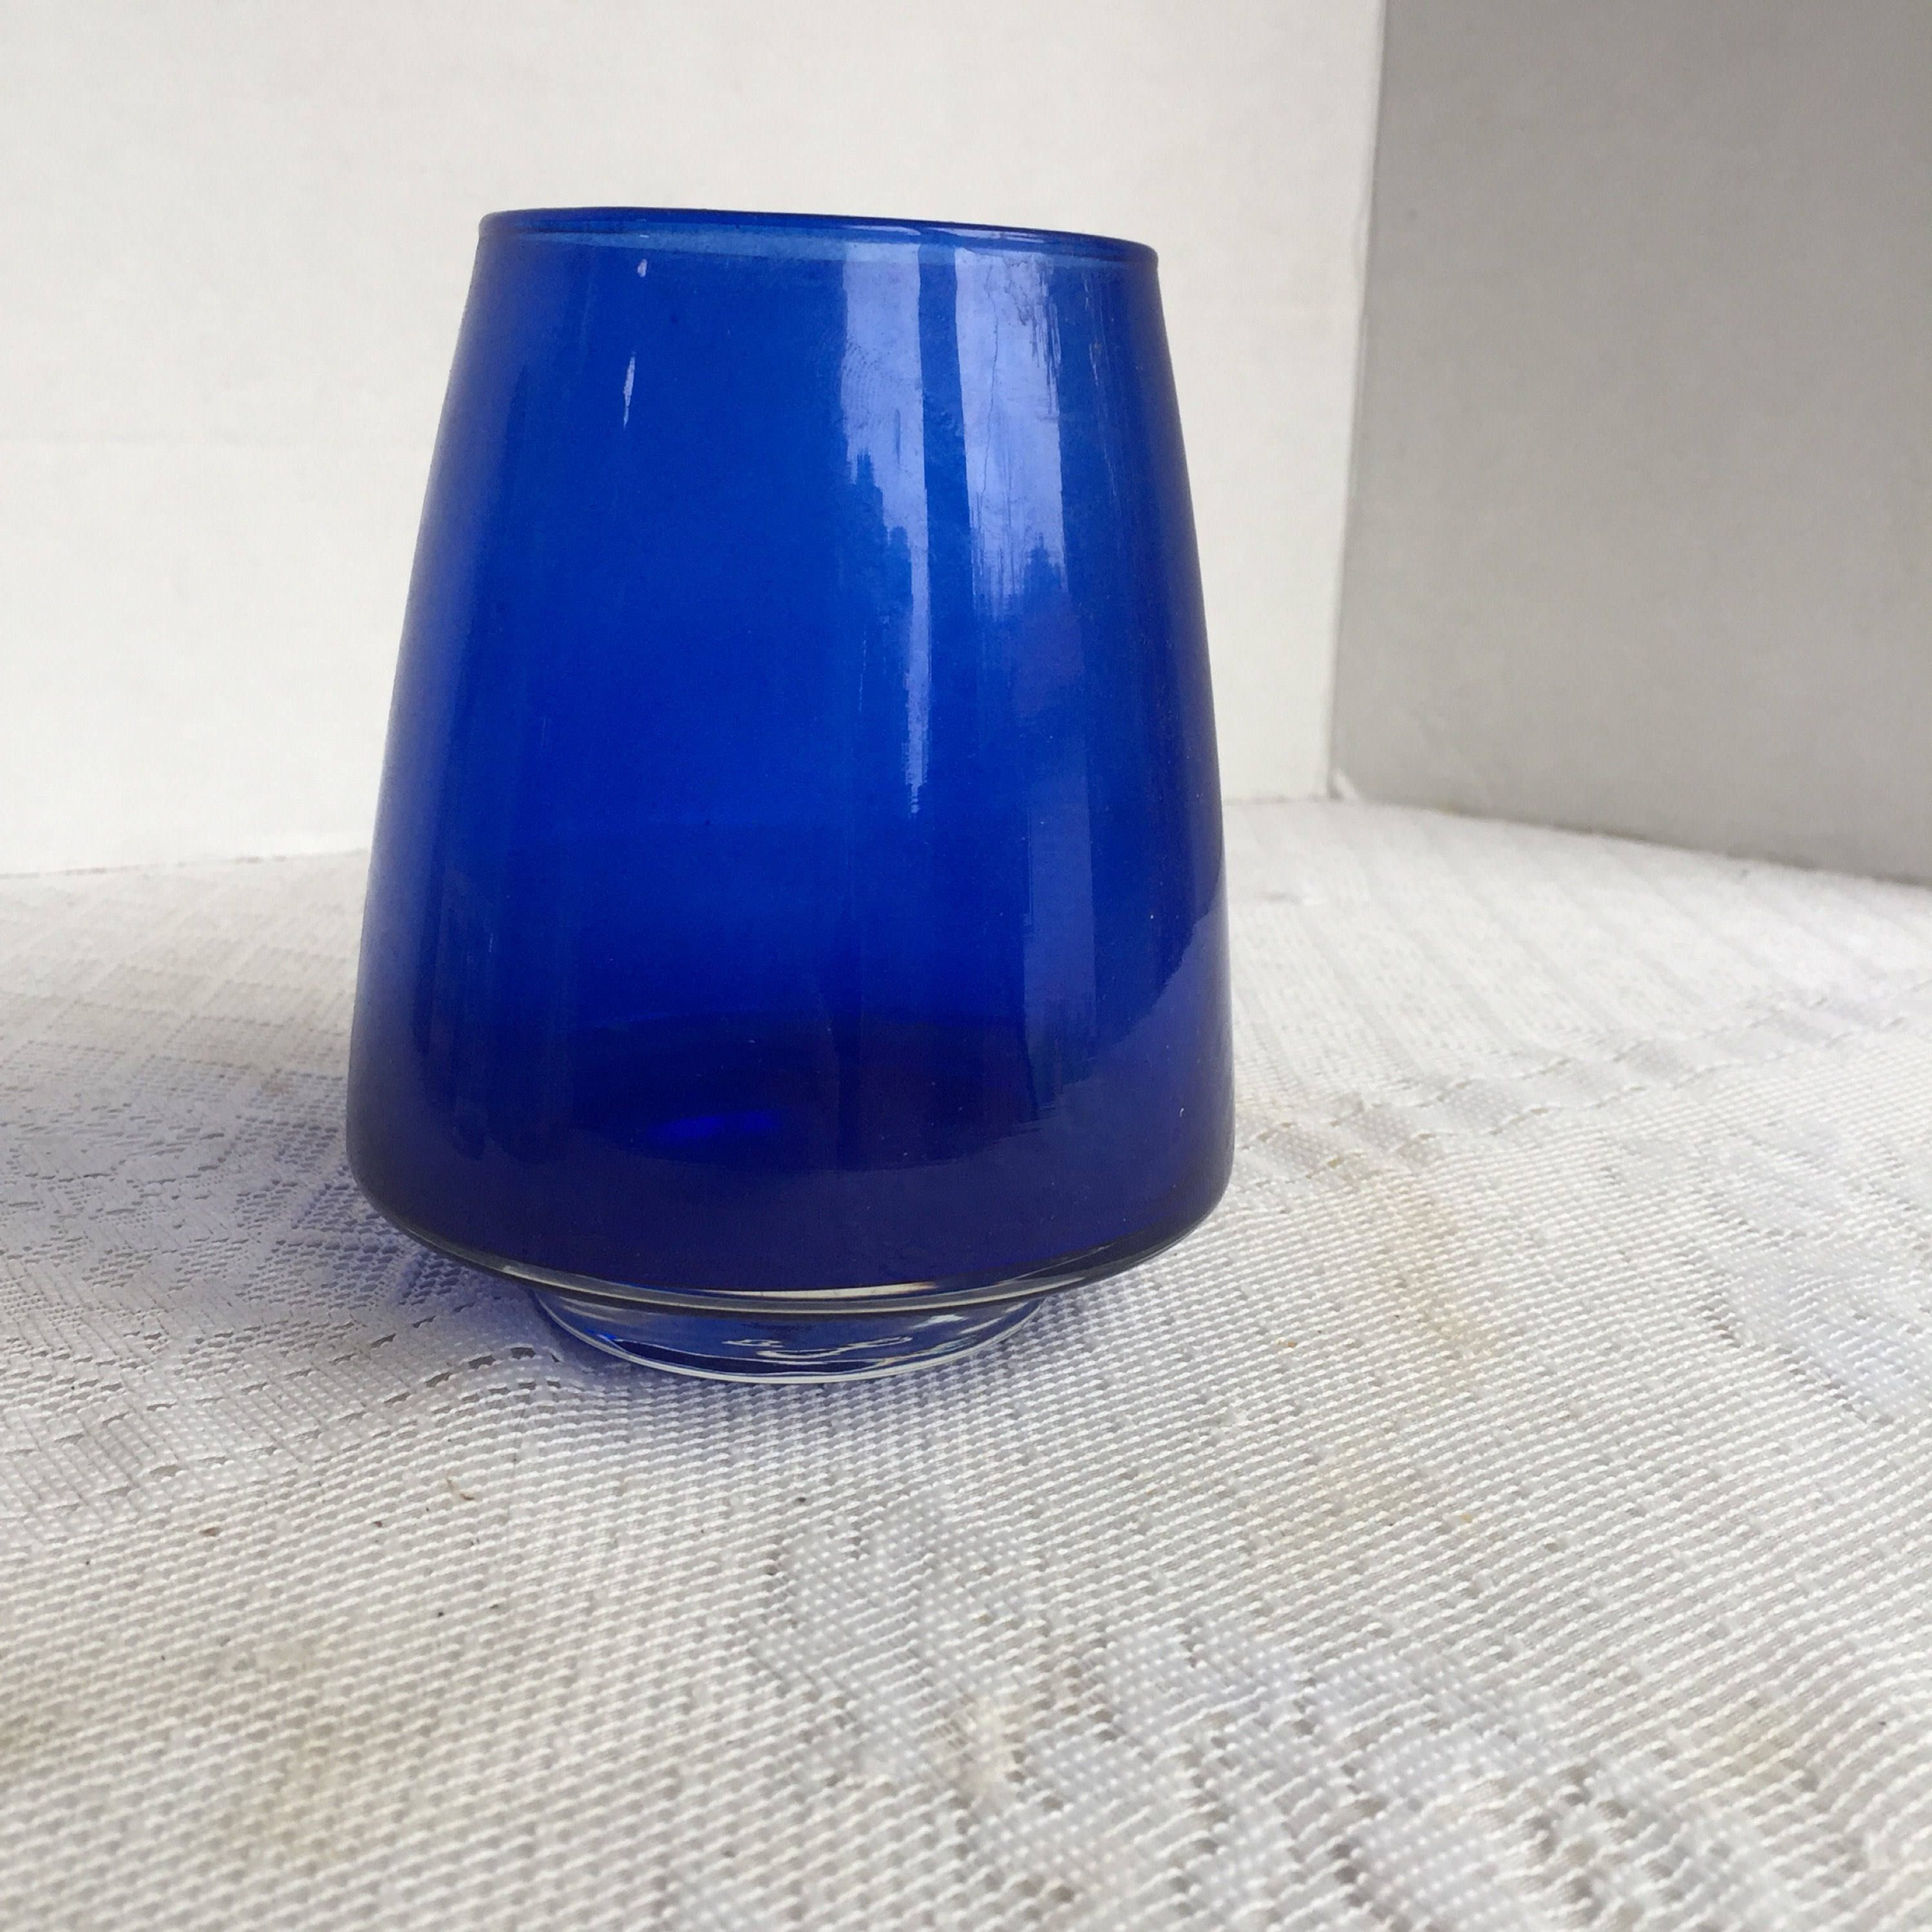 Cobalt Blue Vases Wedding Of Cobalt Blue Glass Cone Shaped Vase Vintage Seventies Floral Throughout Cobalt Blue Glass Cone Shaped Vase Vintage Seventies Floral Supplies by Vintagepoetic On Etsy